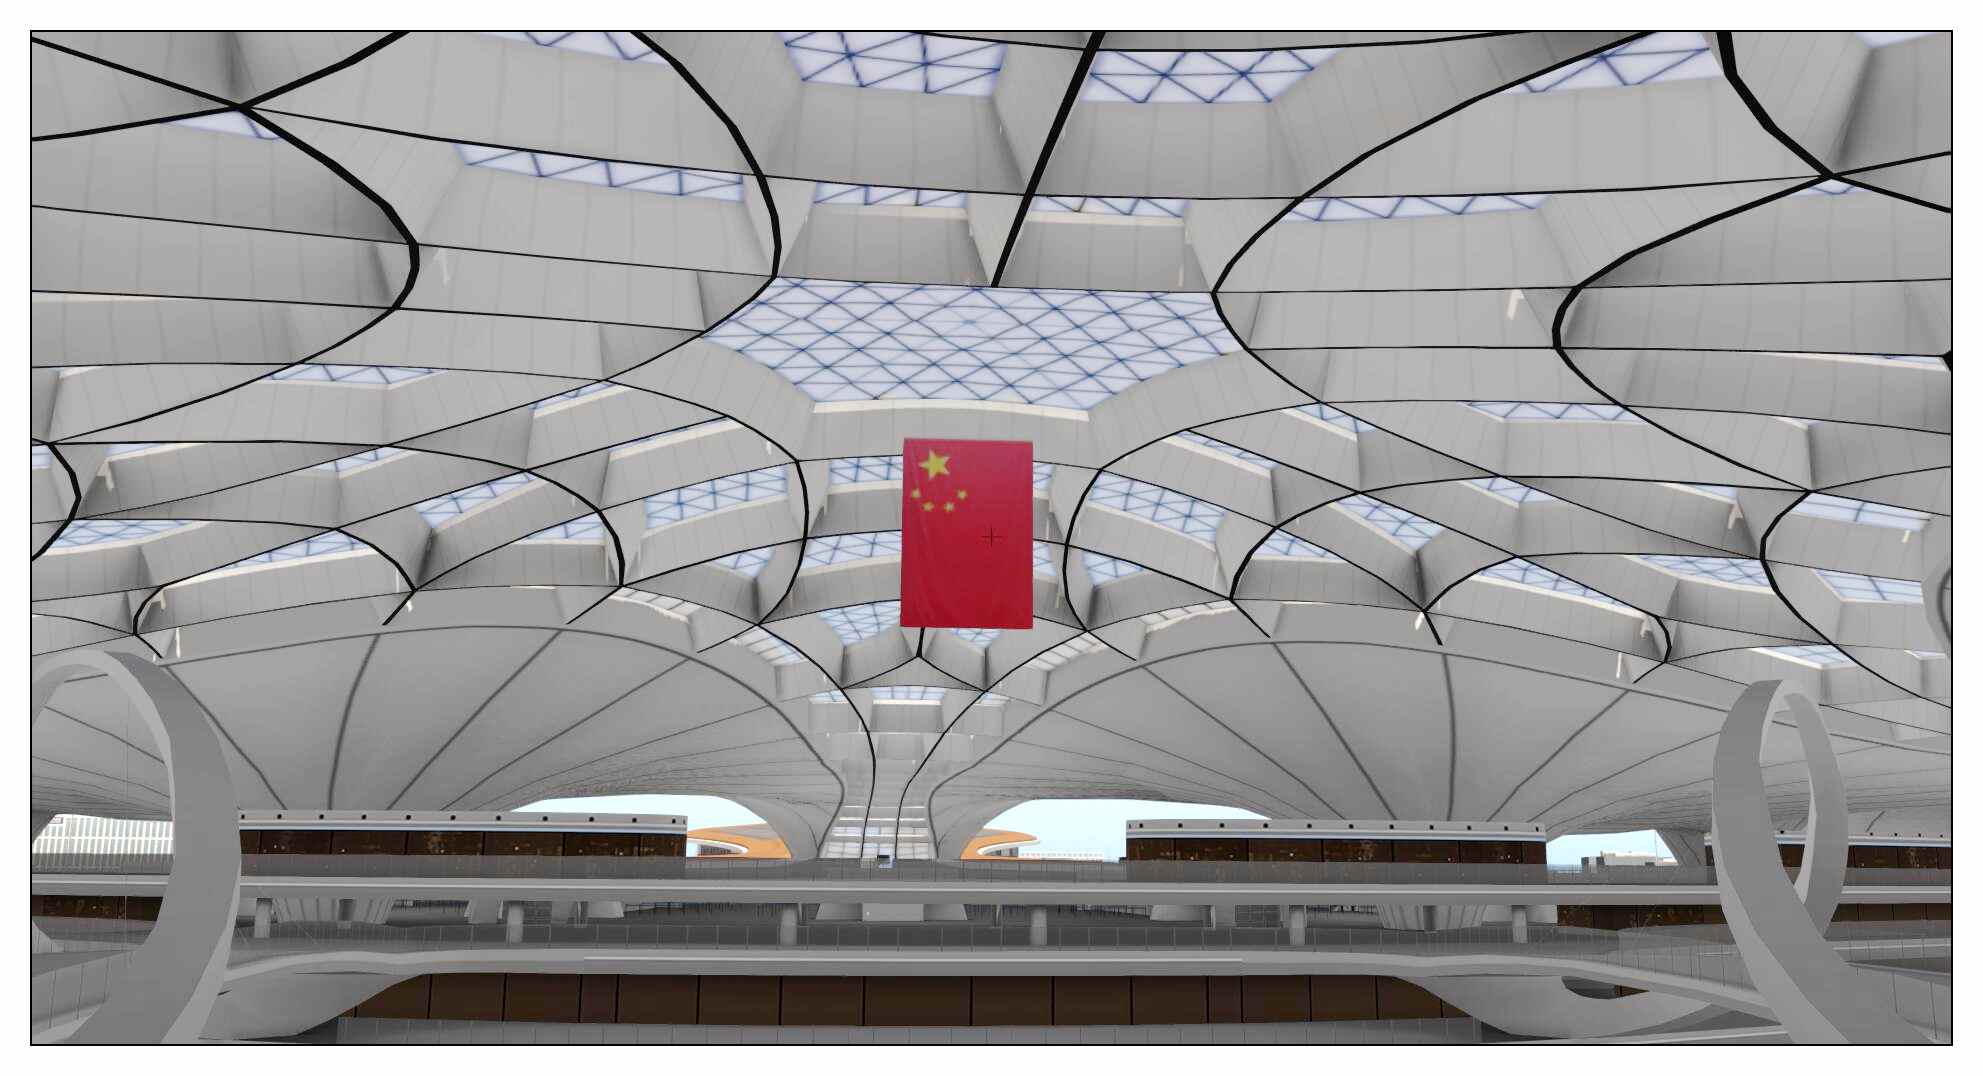 【X-Plane】ZBAD北京大兴国际机场-正式发布-4938 